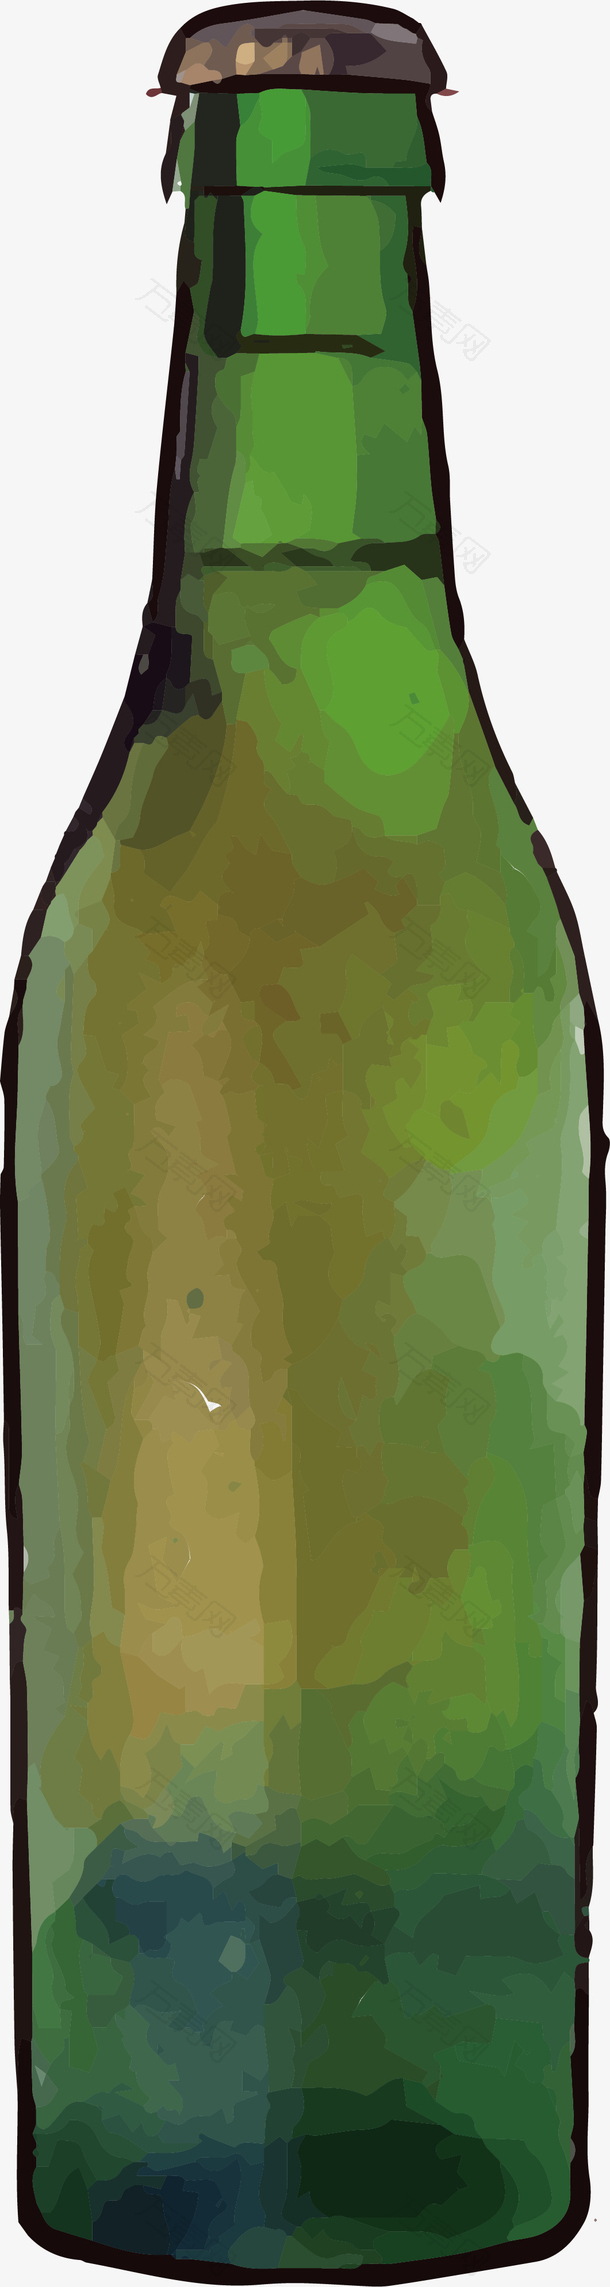 绿色卡通啤酒瓶矢量素材